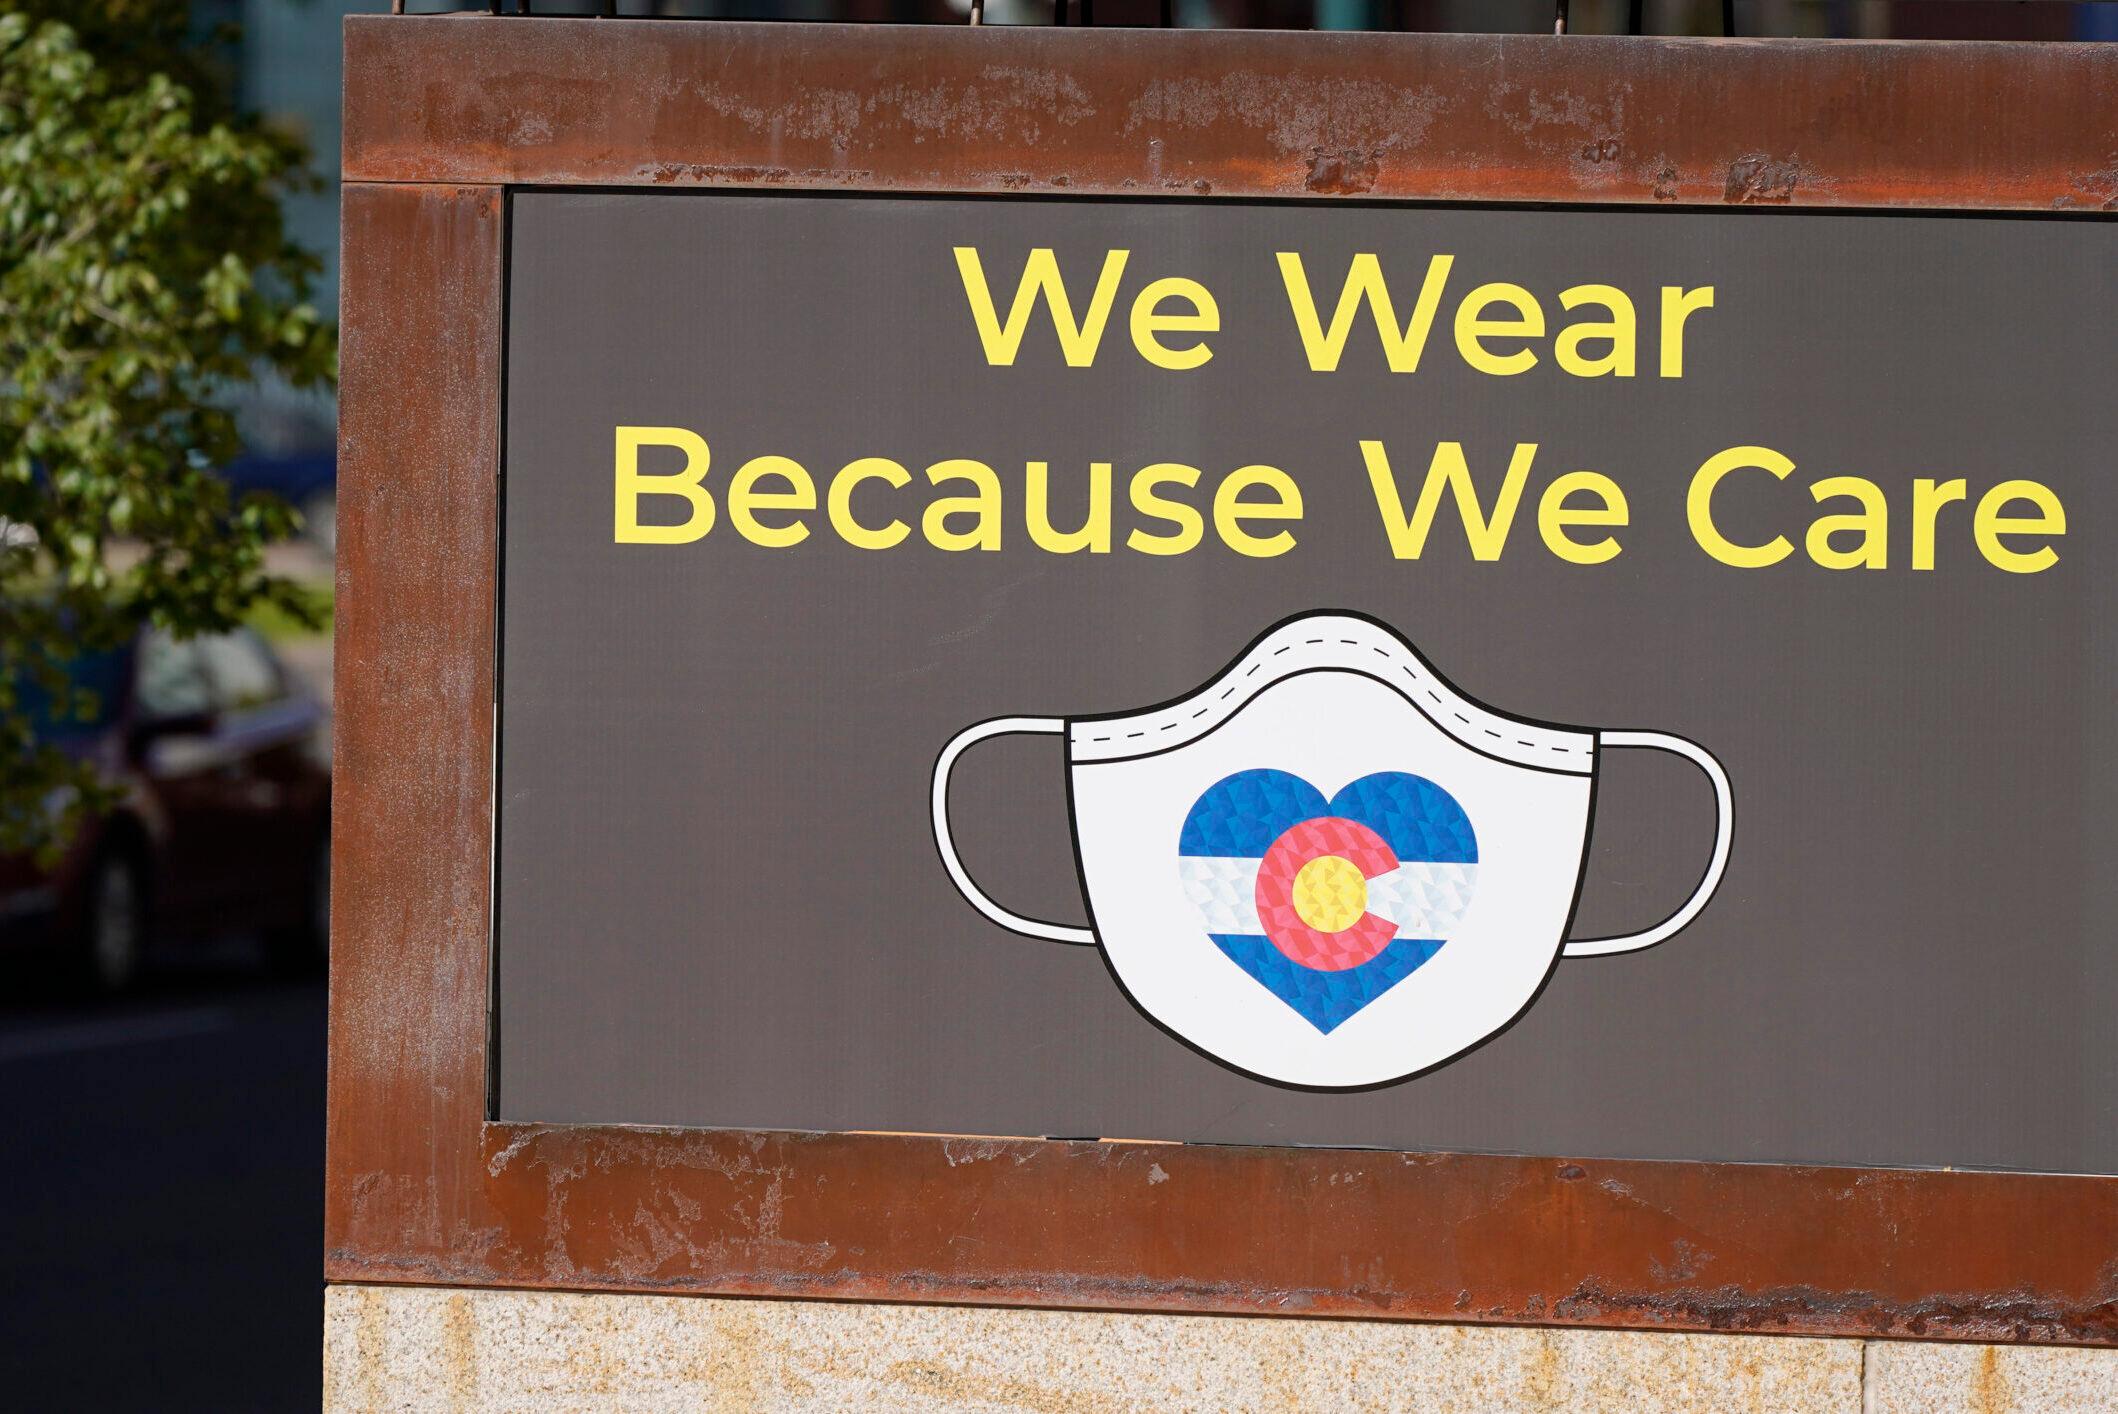 A sign in Denver encourages face masks.